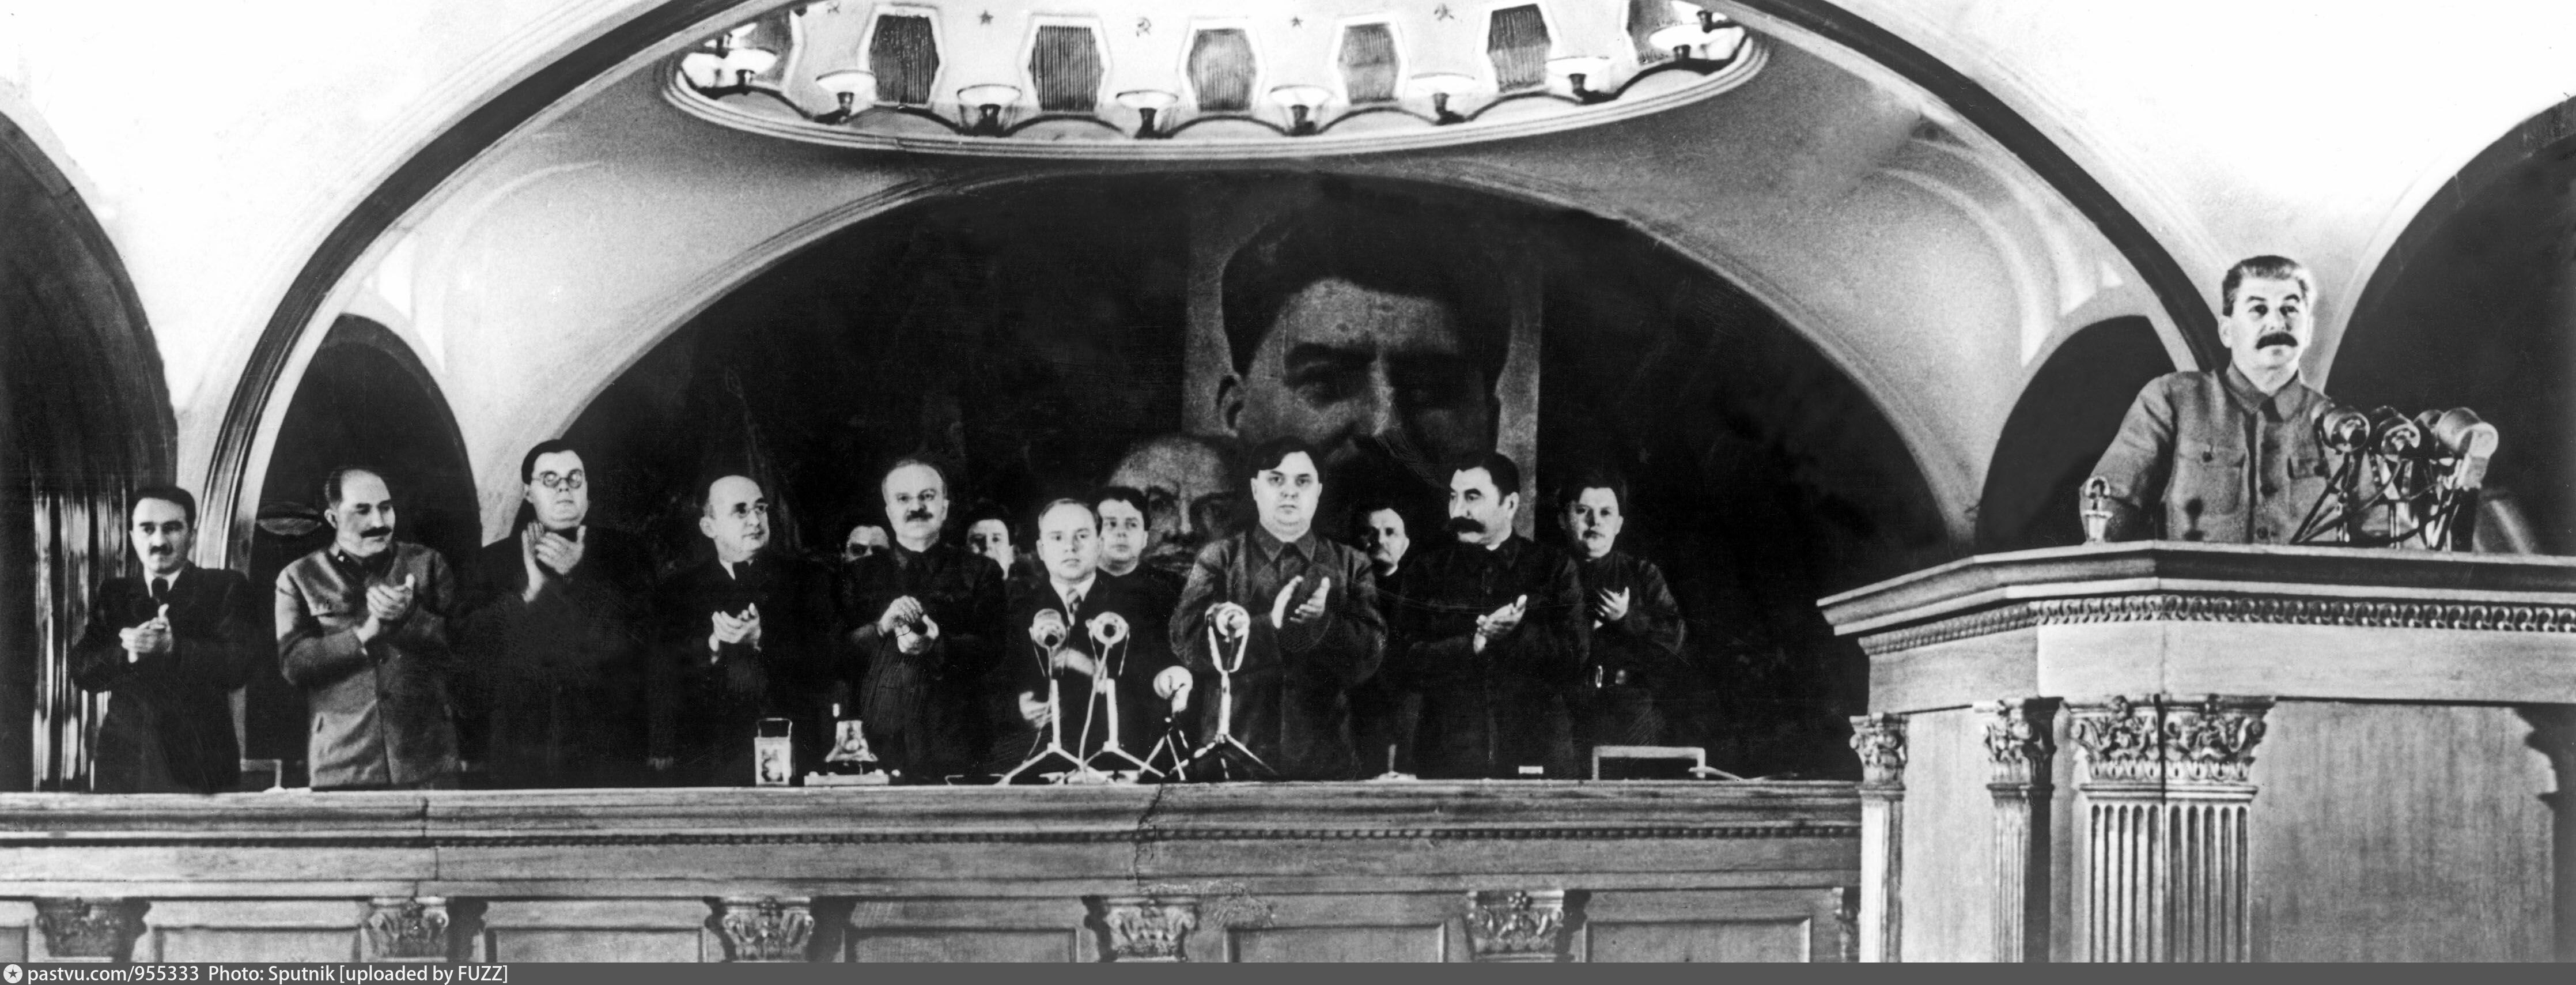 Речь 7 ноября. 6 Ноября 1941 года на станции метро Маяковская. Заседание на Маяковской 6 ноября 1941. Выступление Сталина 6 ноября 1941 года на станции метро Маяковская. Сталин на Маяковской 1941.